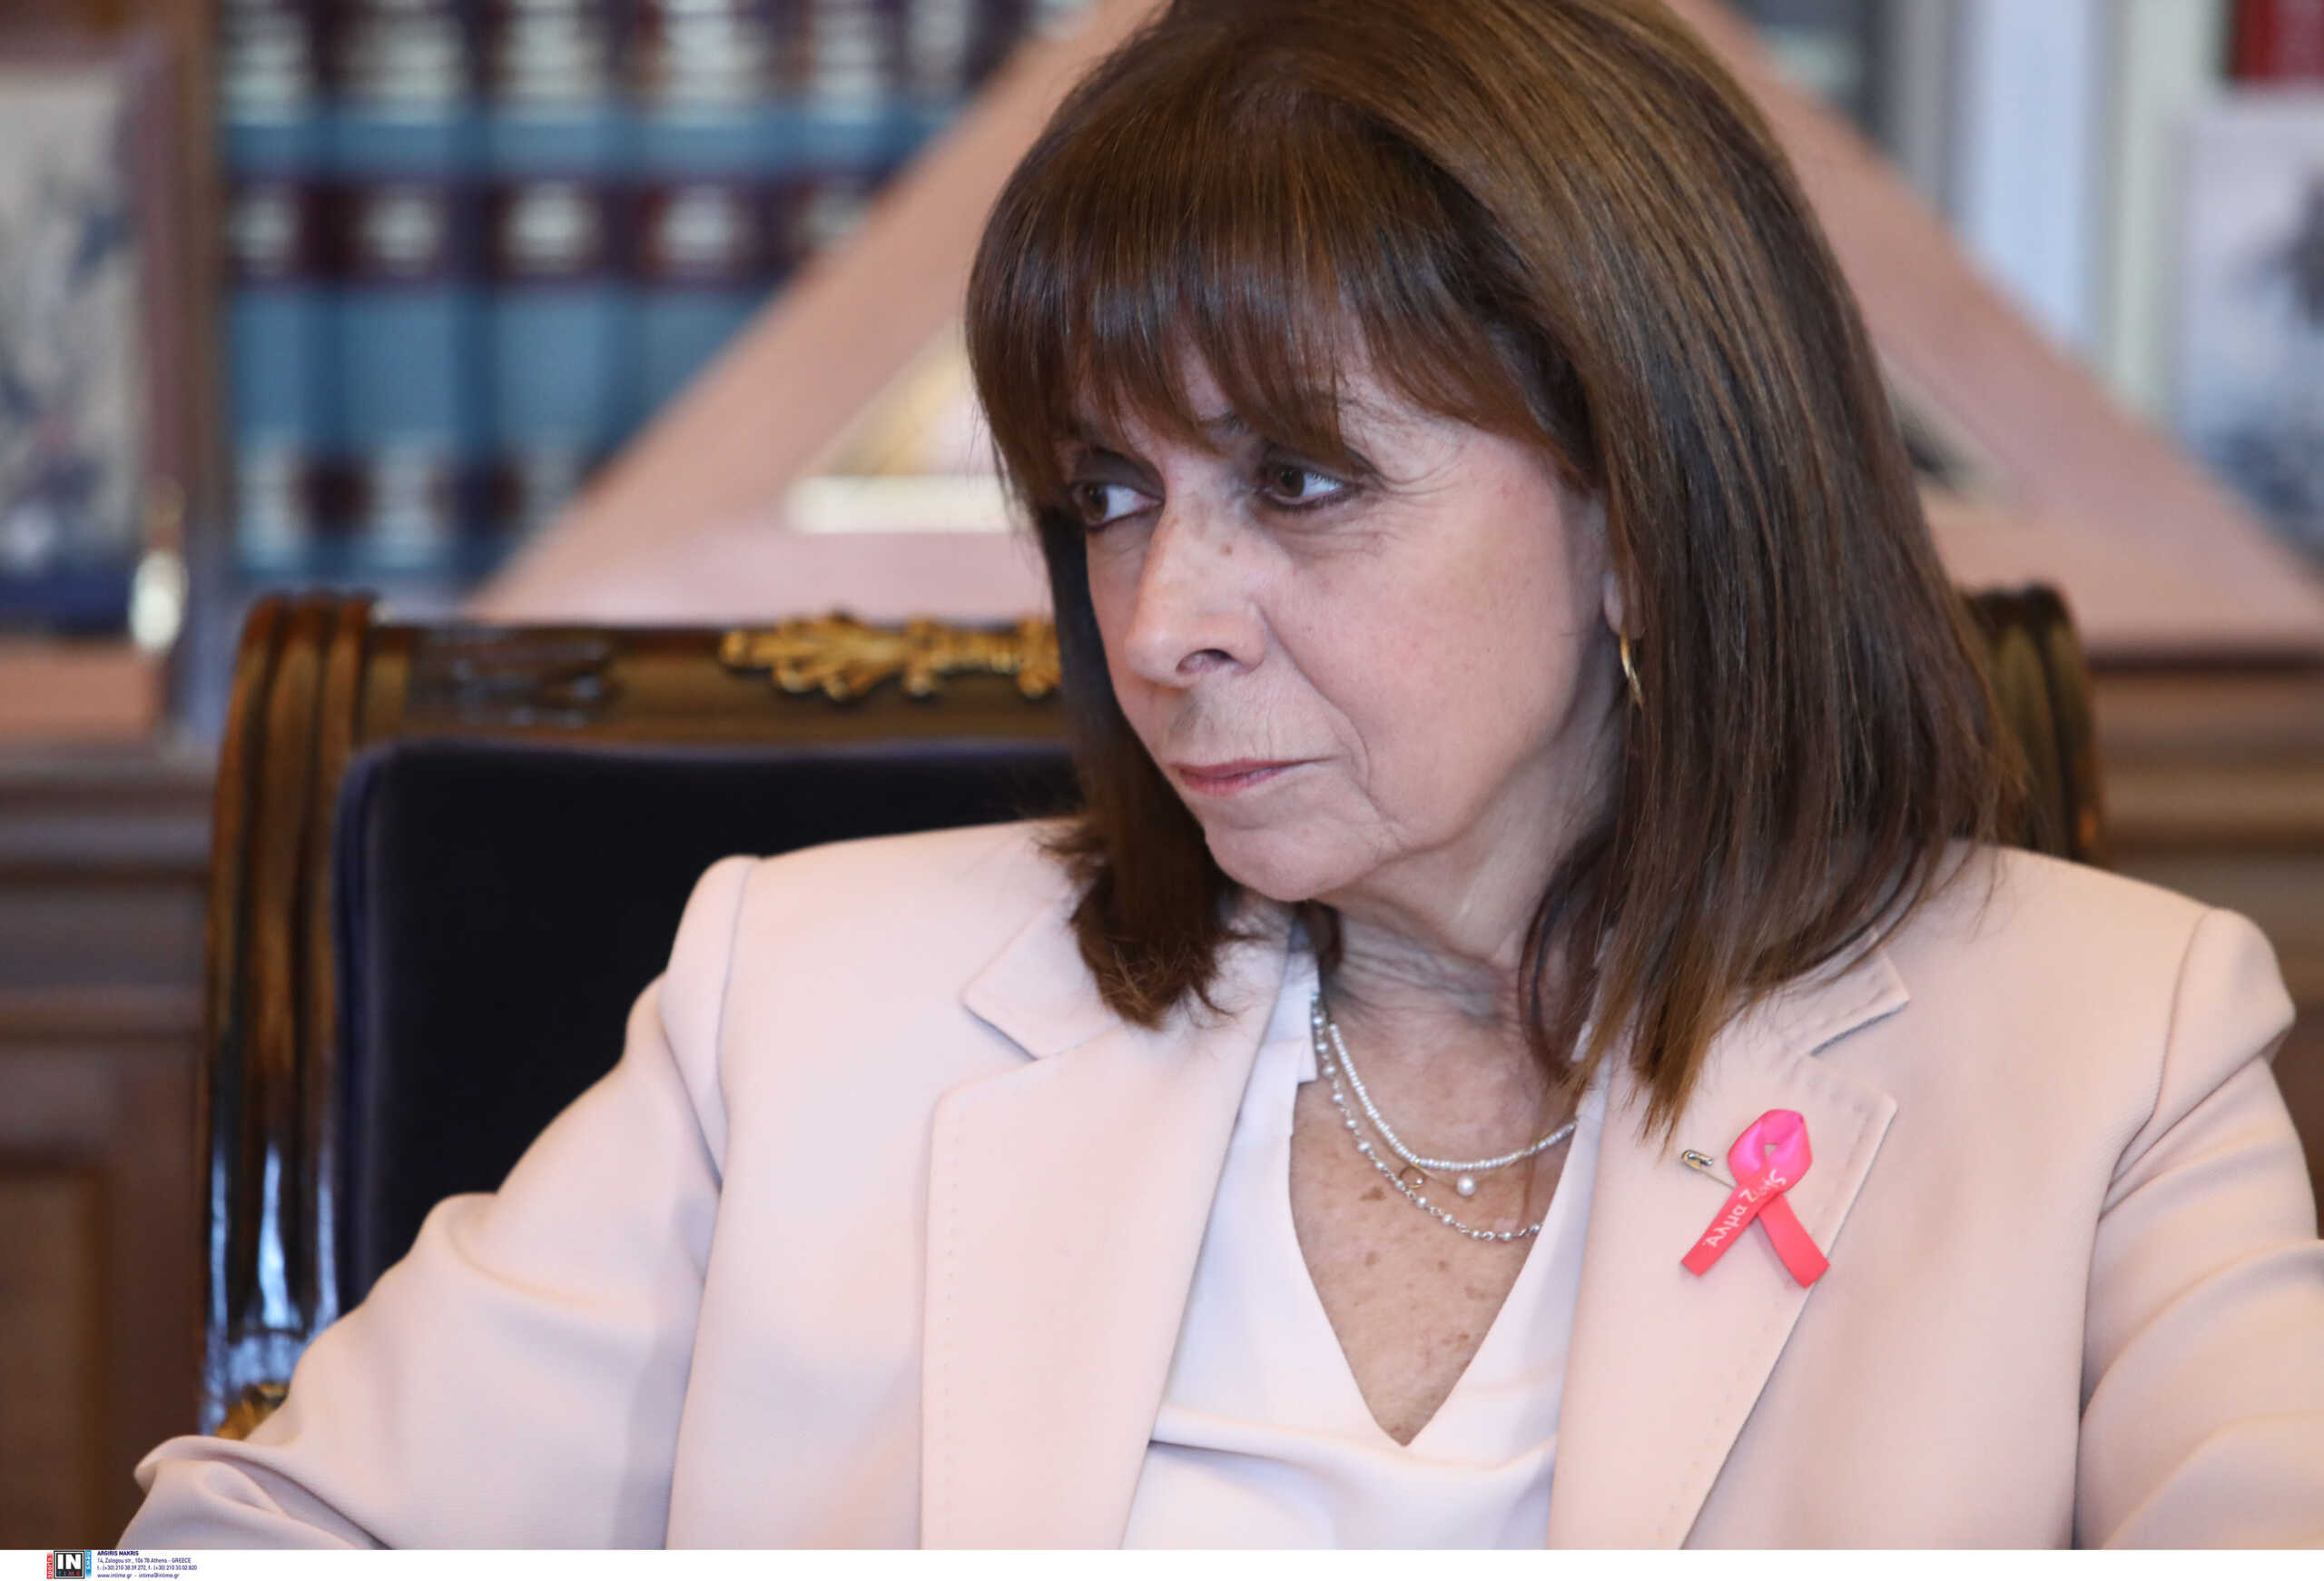 Παγκόσμια ημέρα πρόληψης κατά του καρκίνου του μαστού: «Το βασικό μήνυμα είναι η πρόληψη» λέει η Κατερίνα Σακελλαροπούλου